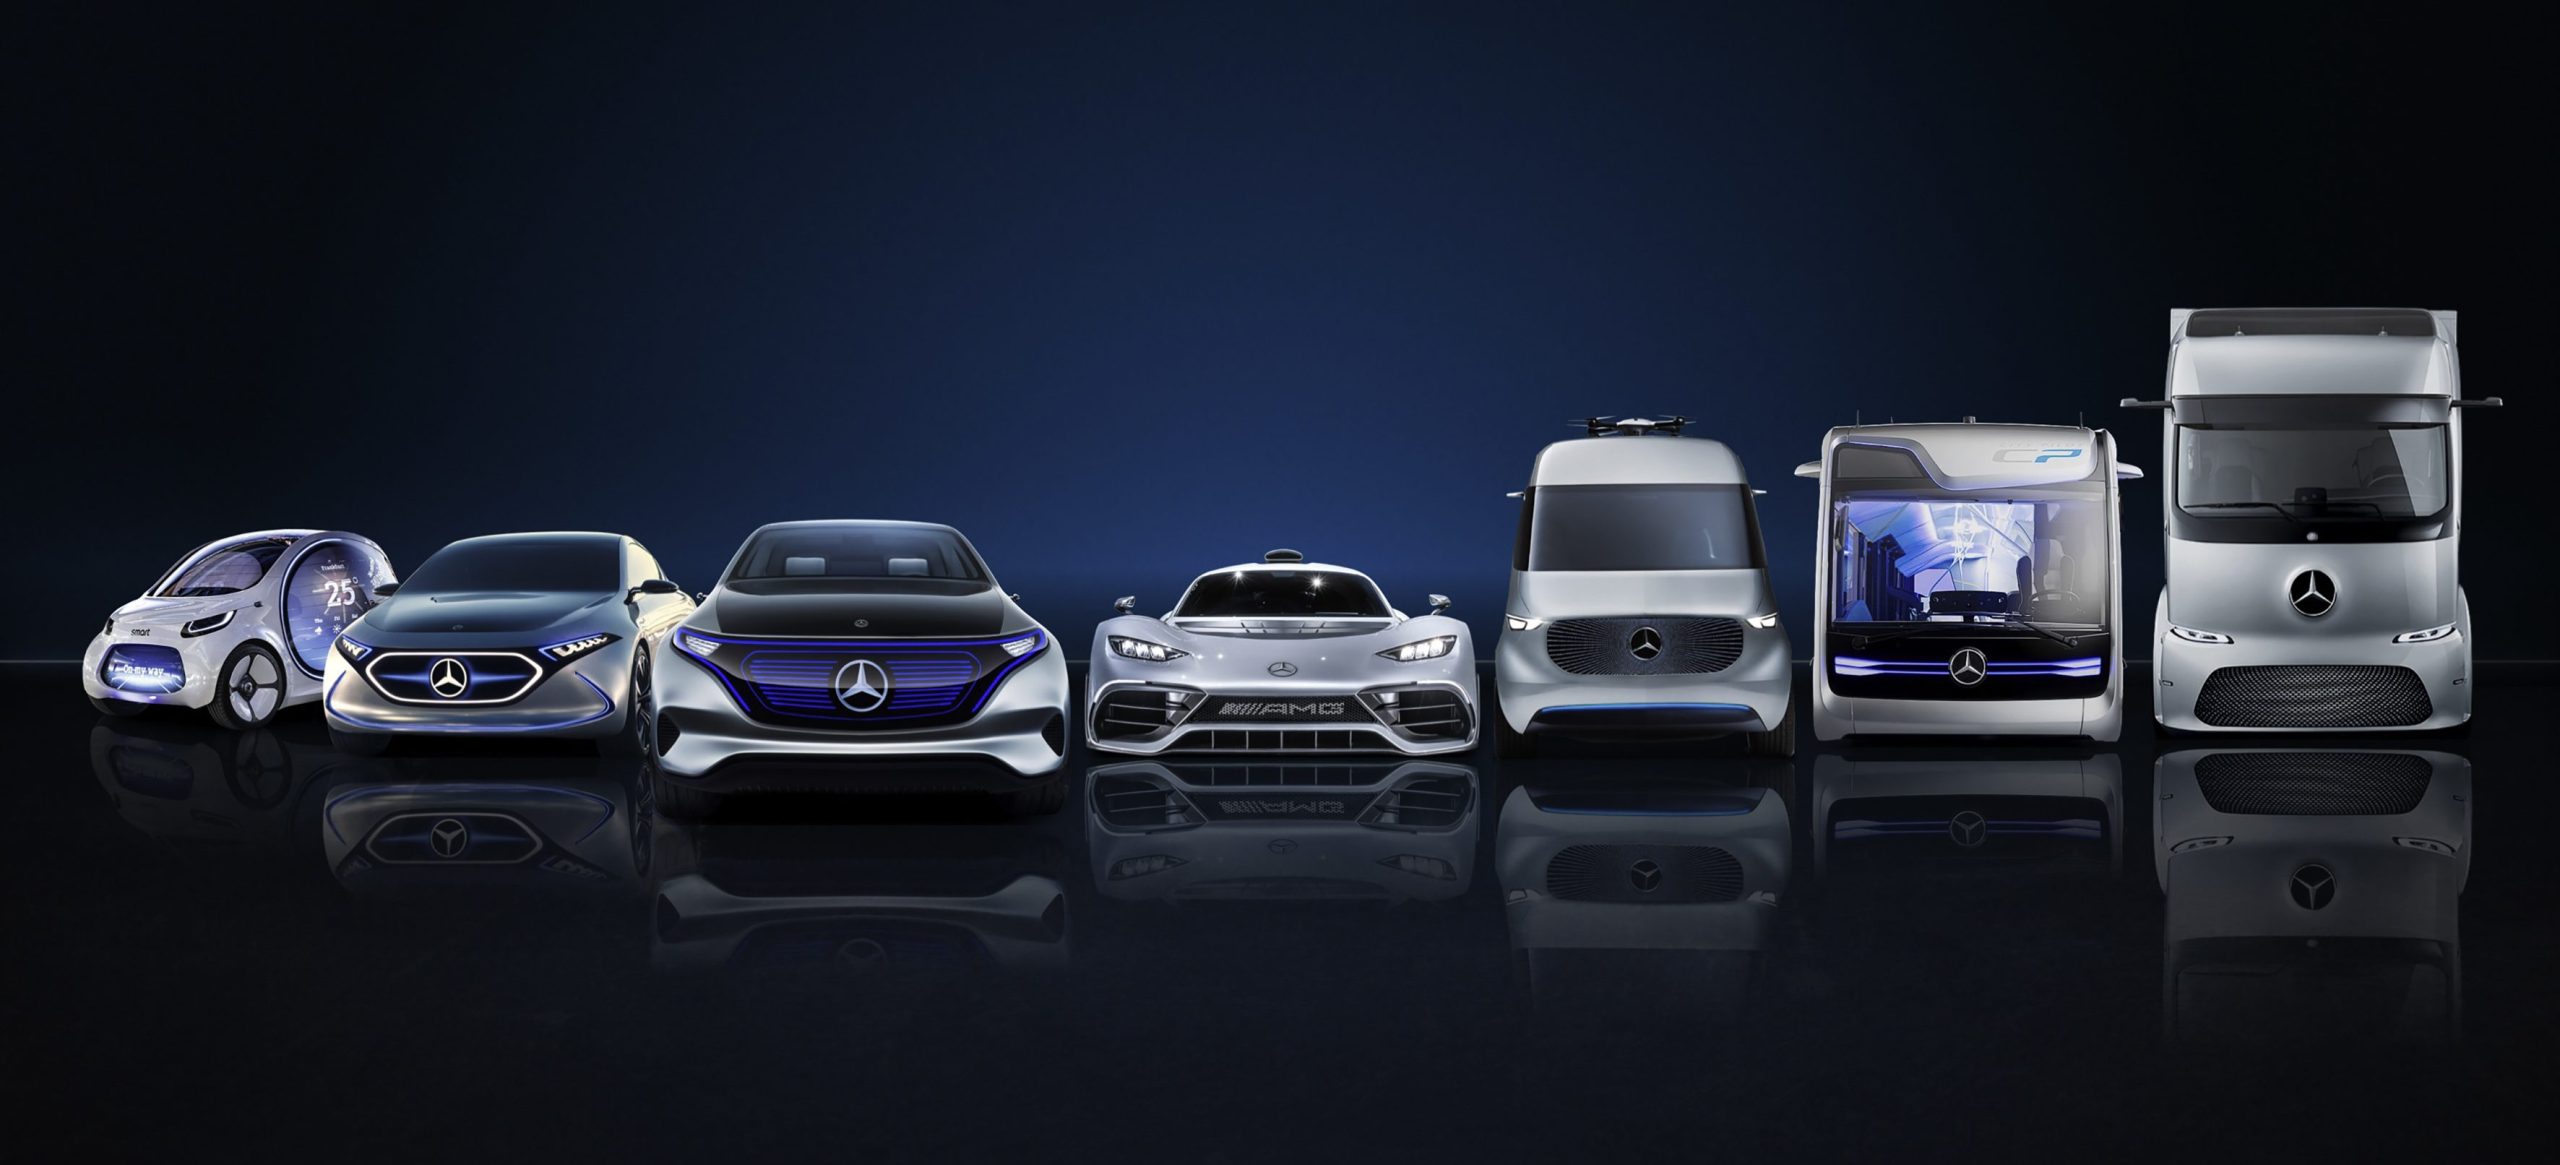 Daimler აცხადებს 85,000 მილიარდი დოლარის ინვესტიციას თავისი მანქანების ელექტრიფიკაციის დასაჩქარებლად.